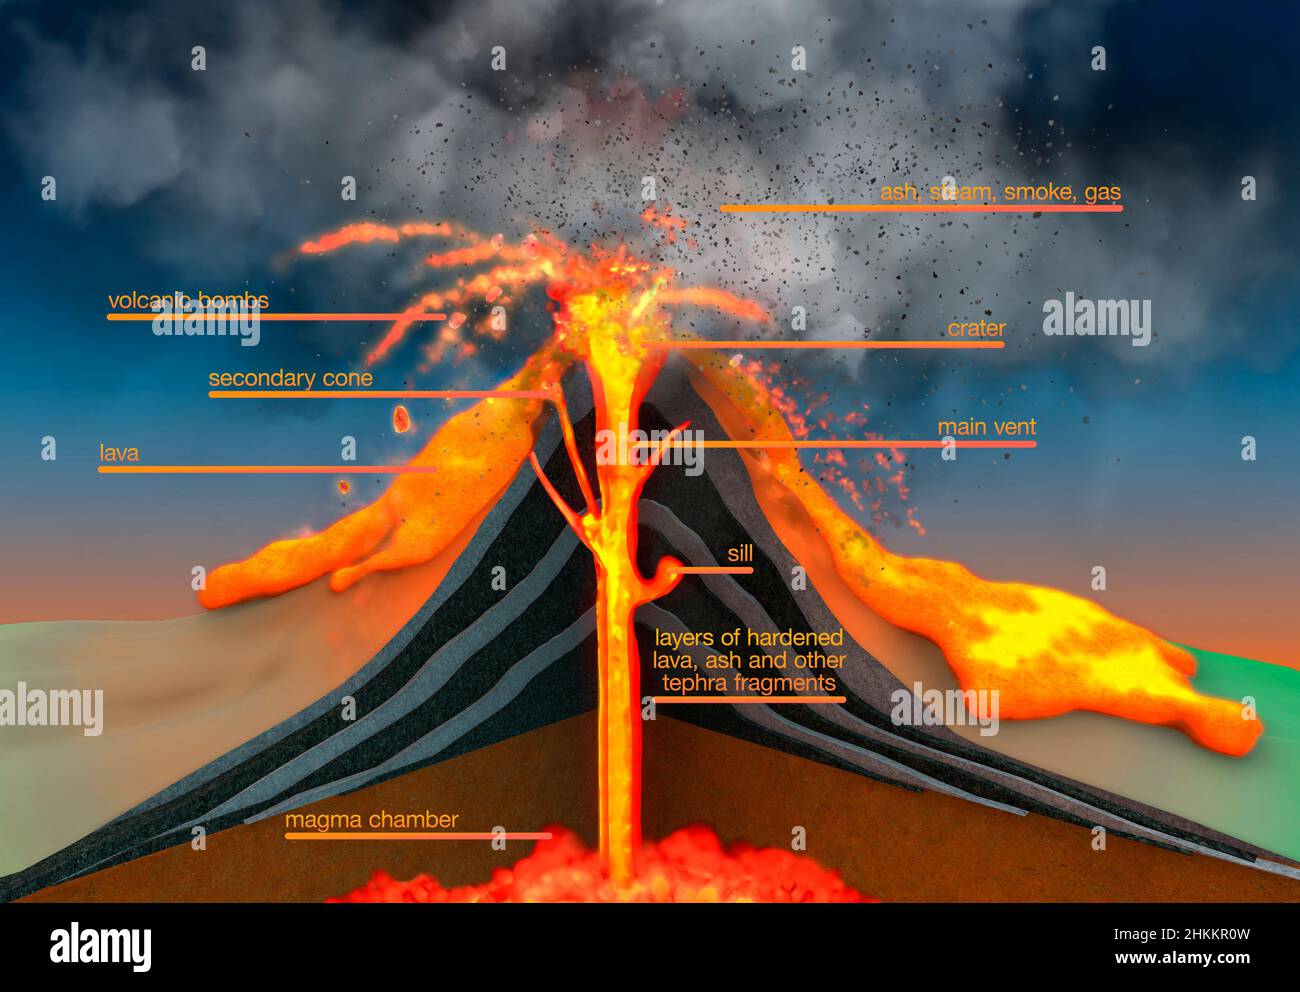 Erupción de stratovolcano, ilustración Foto de stock